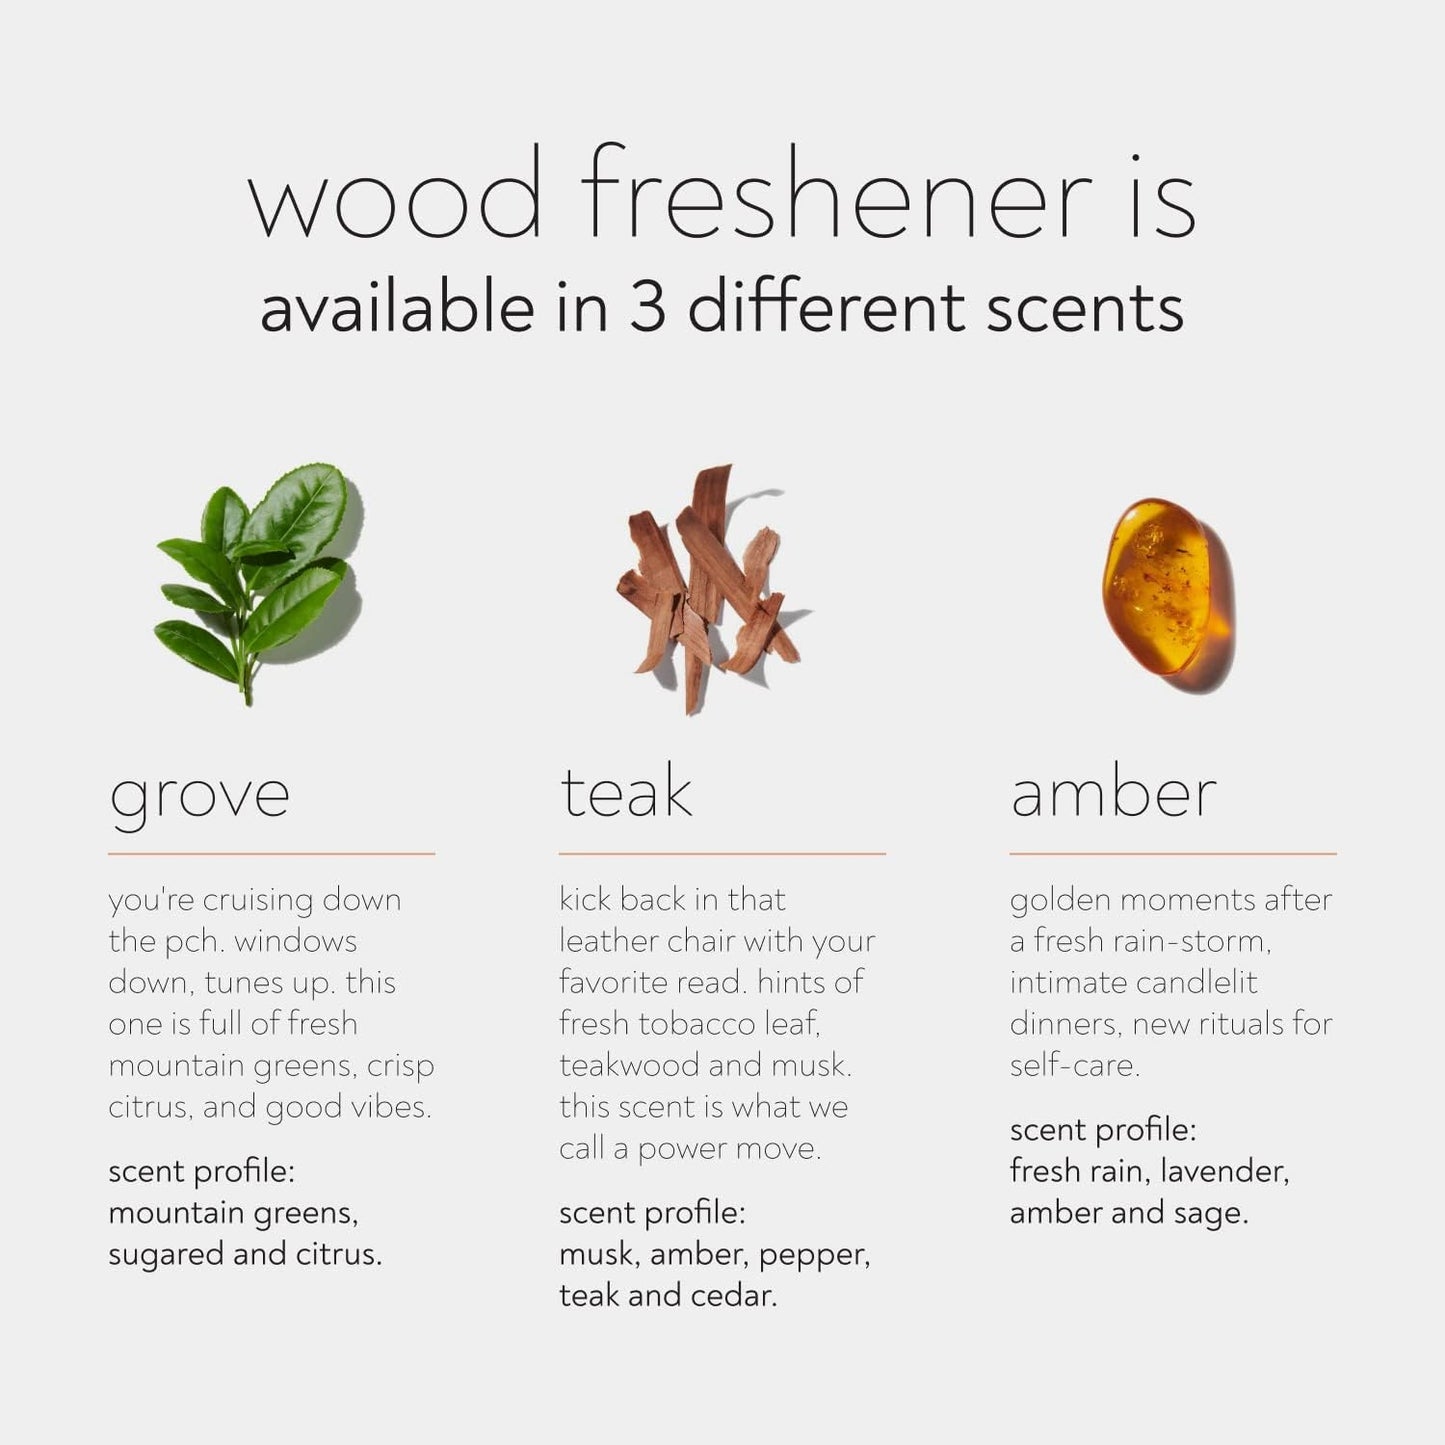 Drift Car Air Freshener - Wood Air Freshener - Car Odor Eliminator - Teak Scent Starter Kit